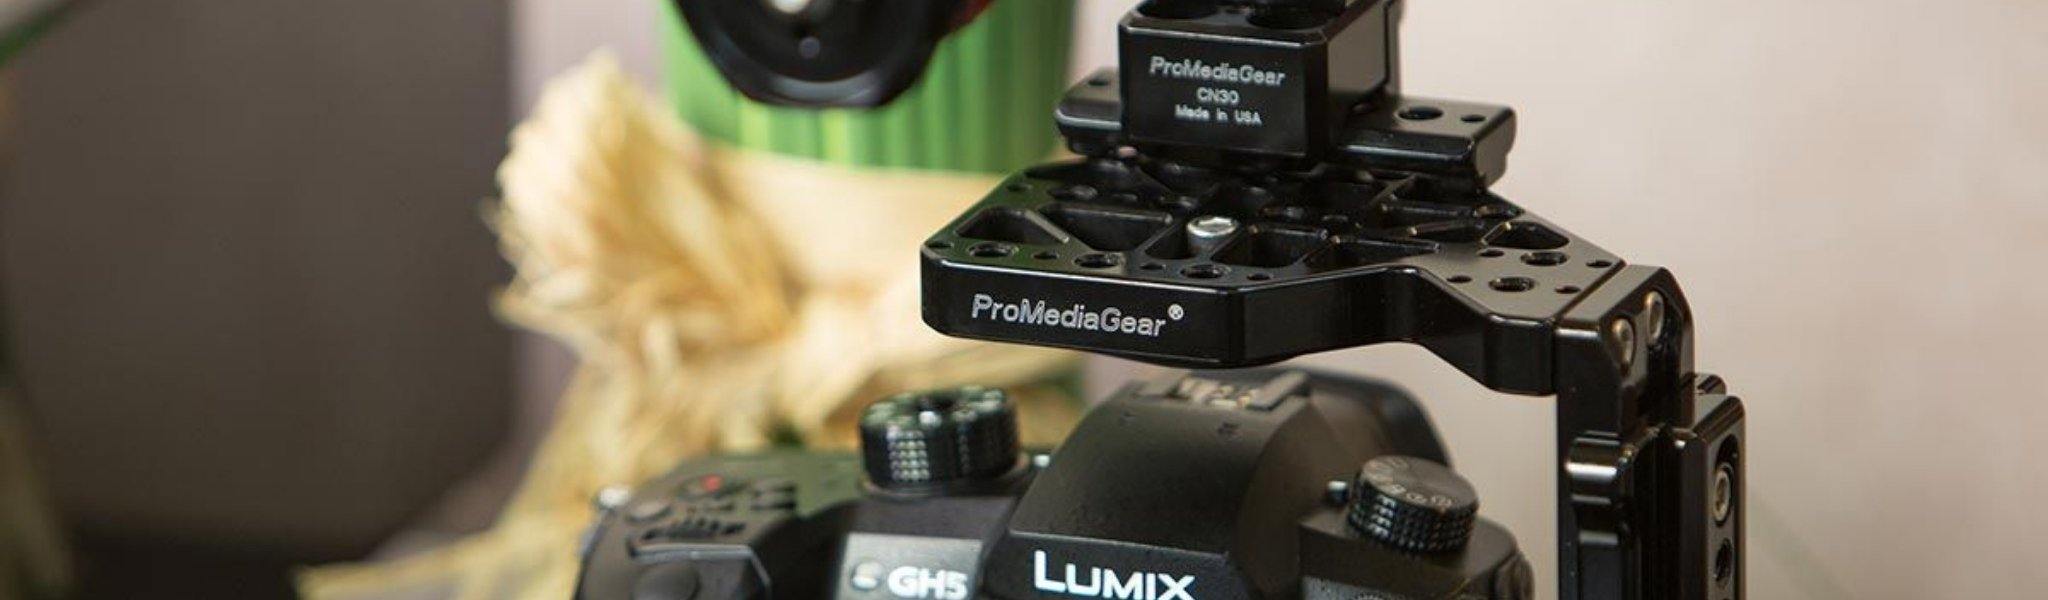 ProMediaGear video camera cage